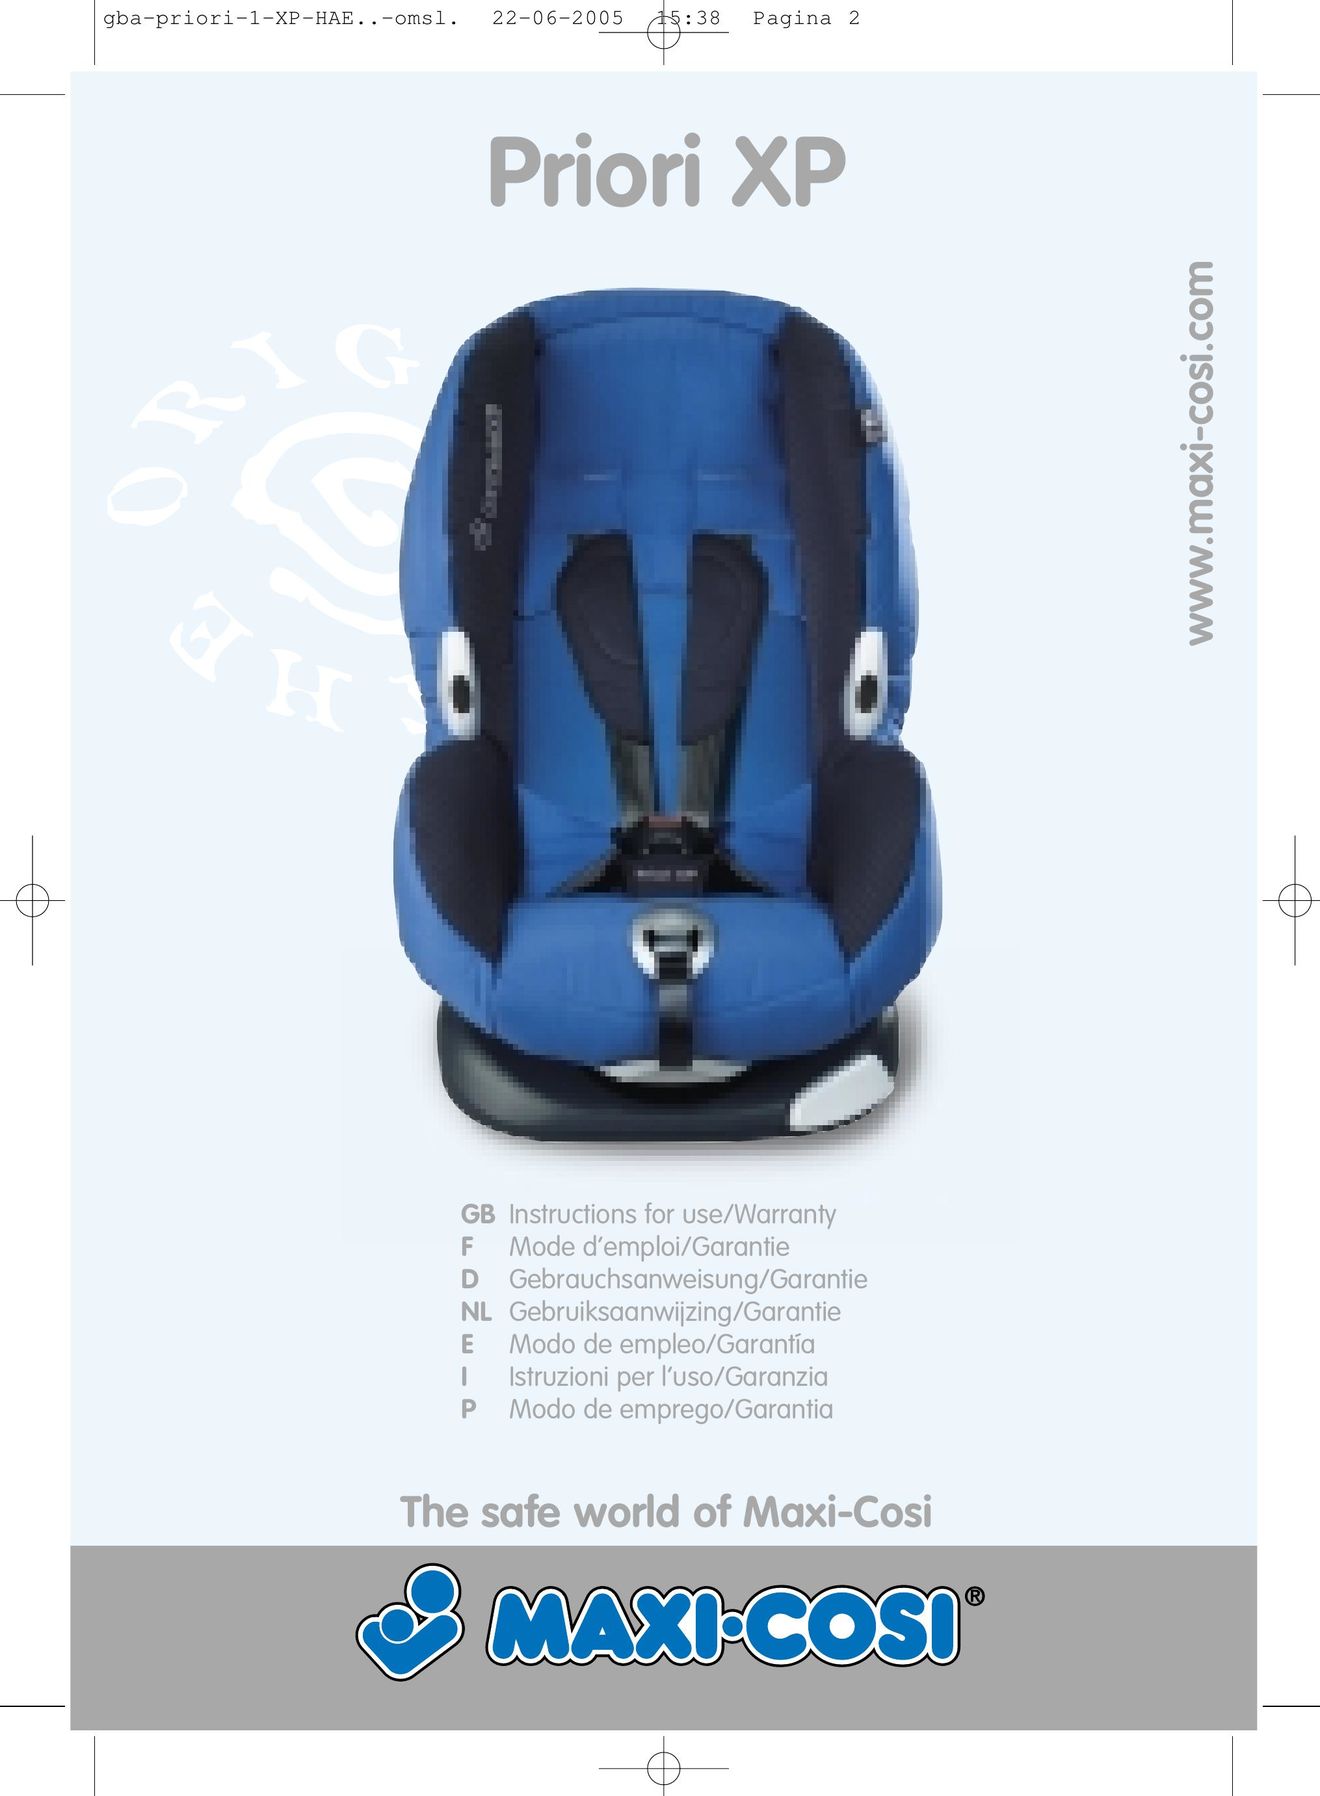 Maxi-Cosi Priori XP Car Seat User Manual